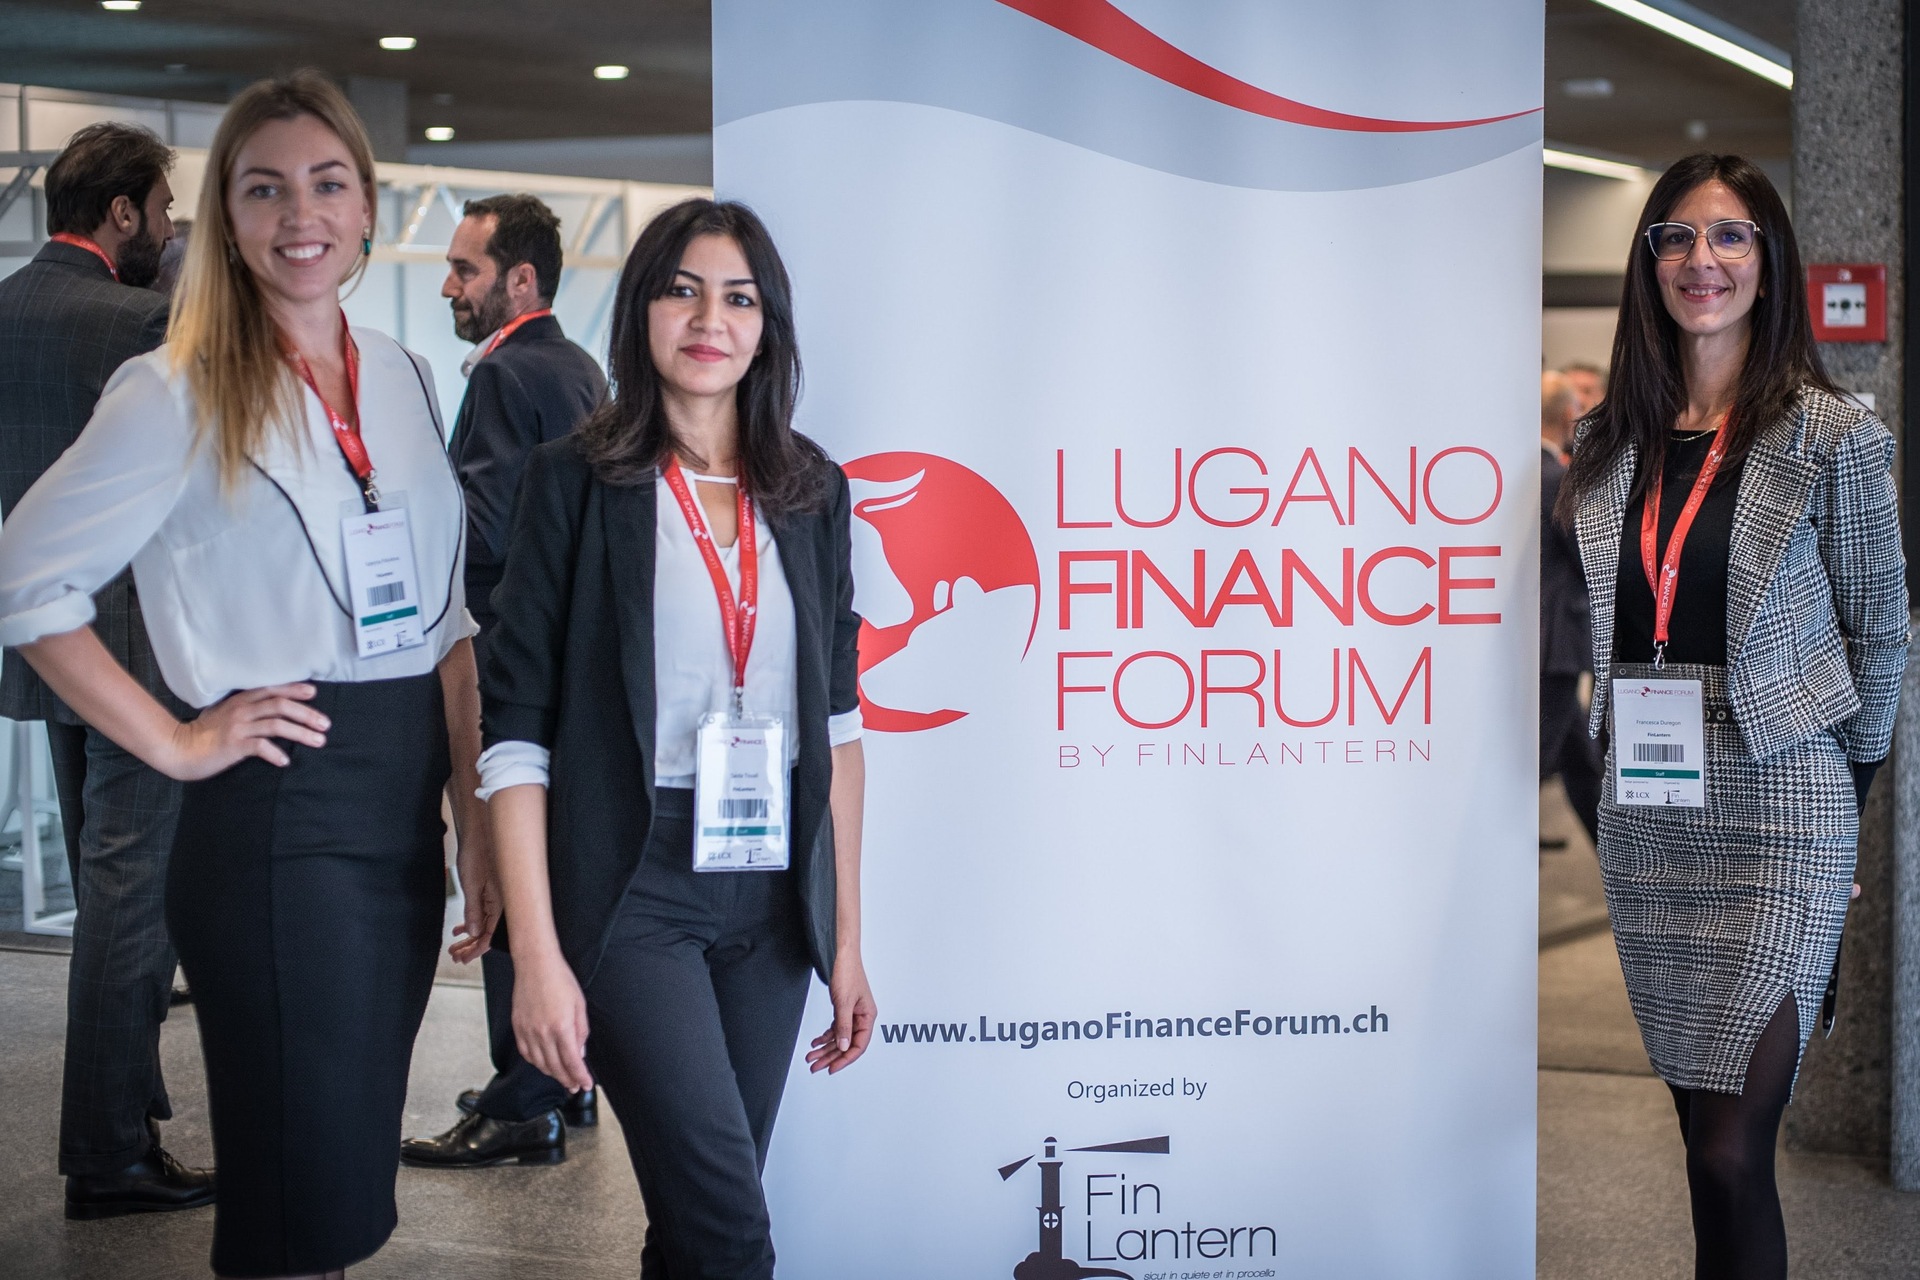 Lugano Maliyyə Forumu: "Luqano Maliyyə Forumu"nun 2022-ci il buraxılışının Sərgi Sahəsi